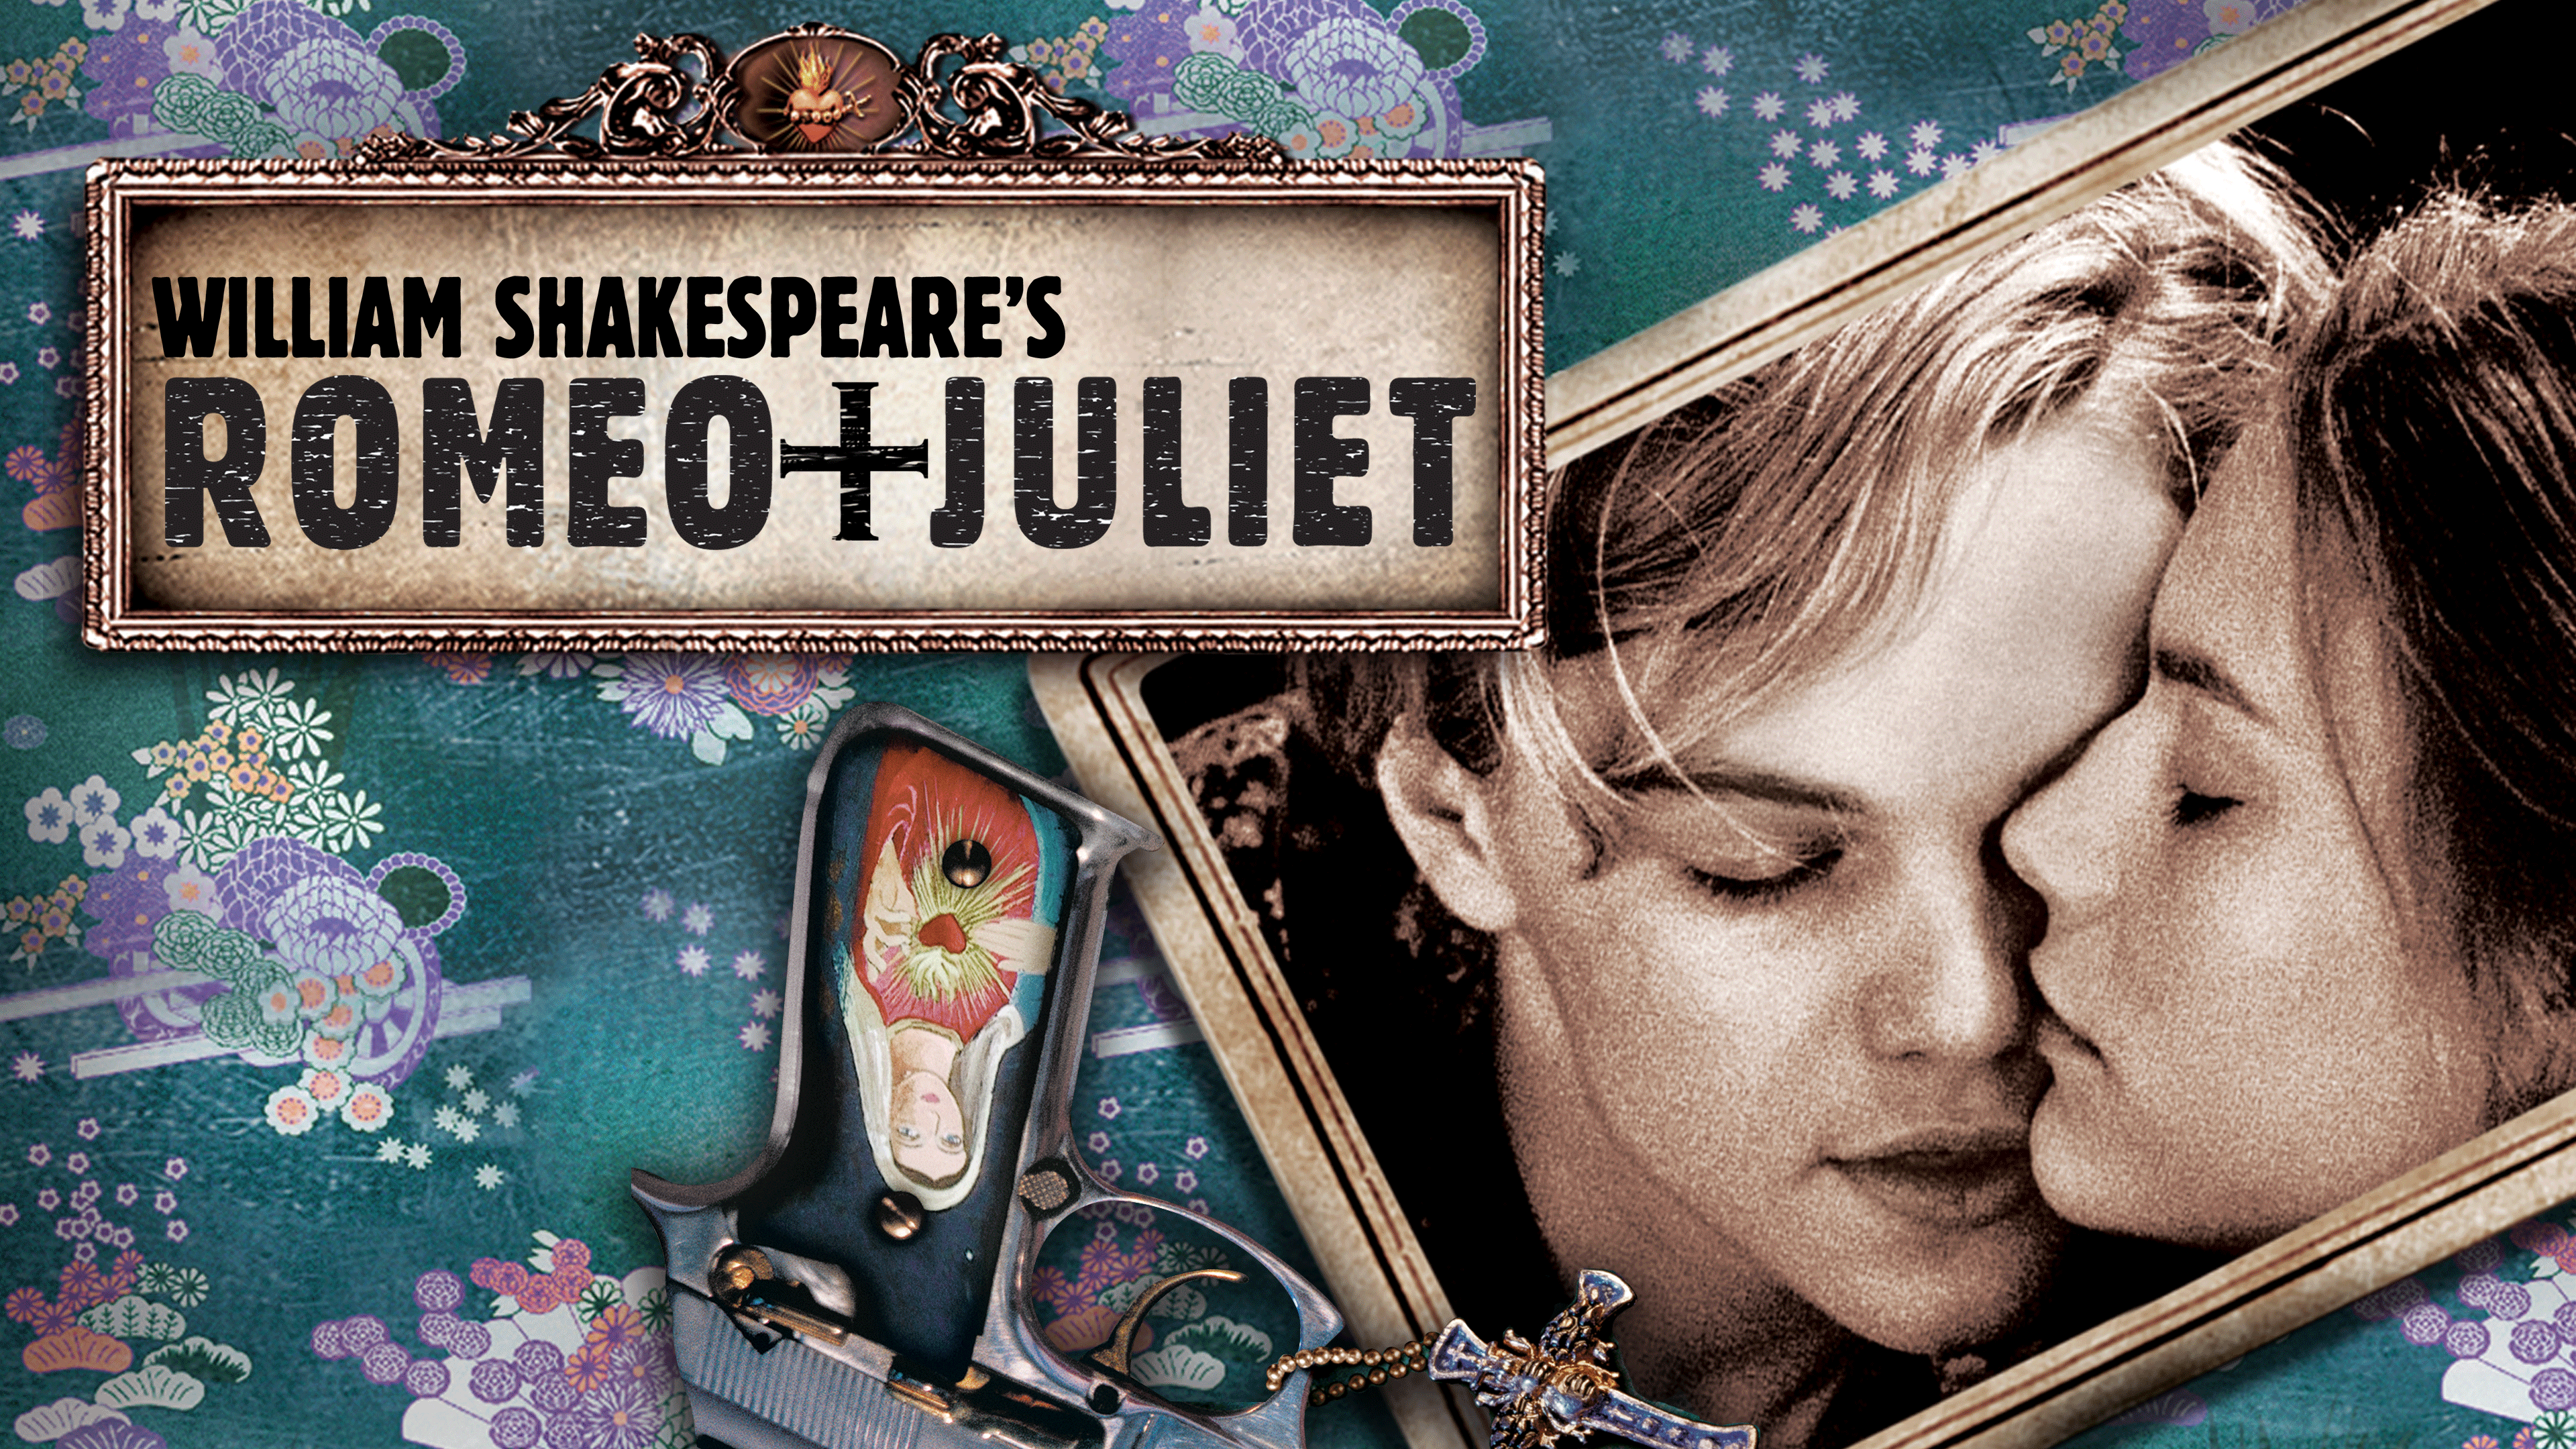 Romeo + Juliet Full Movie